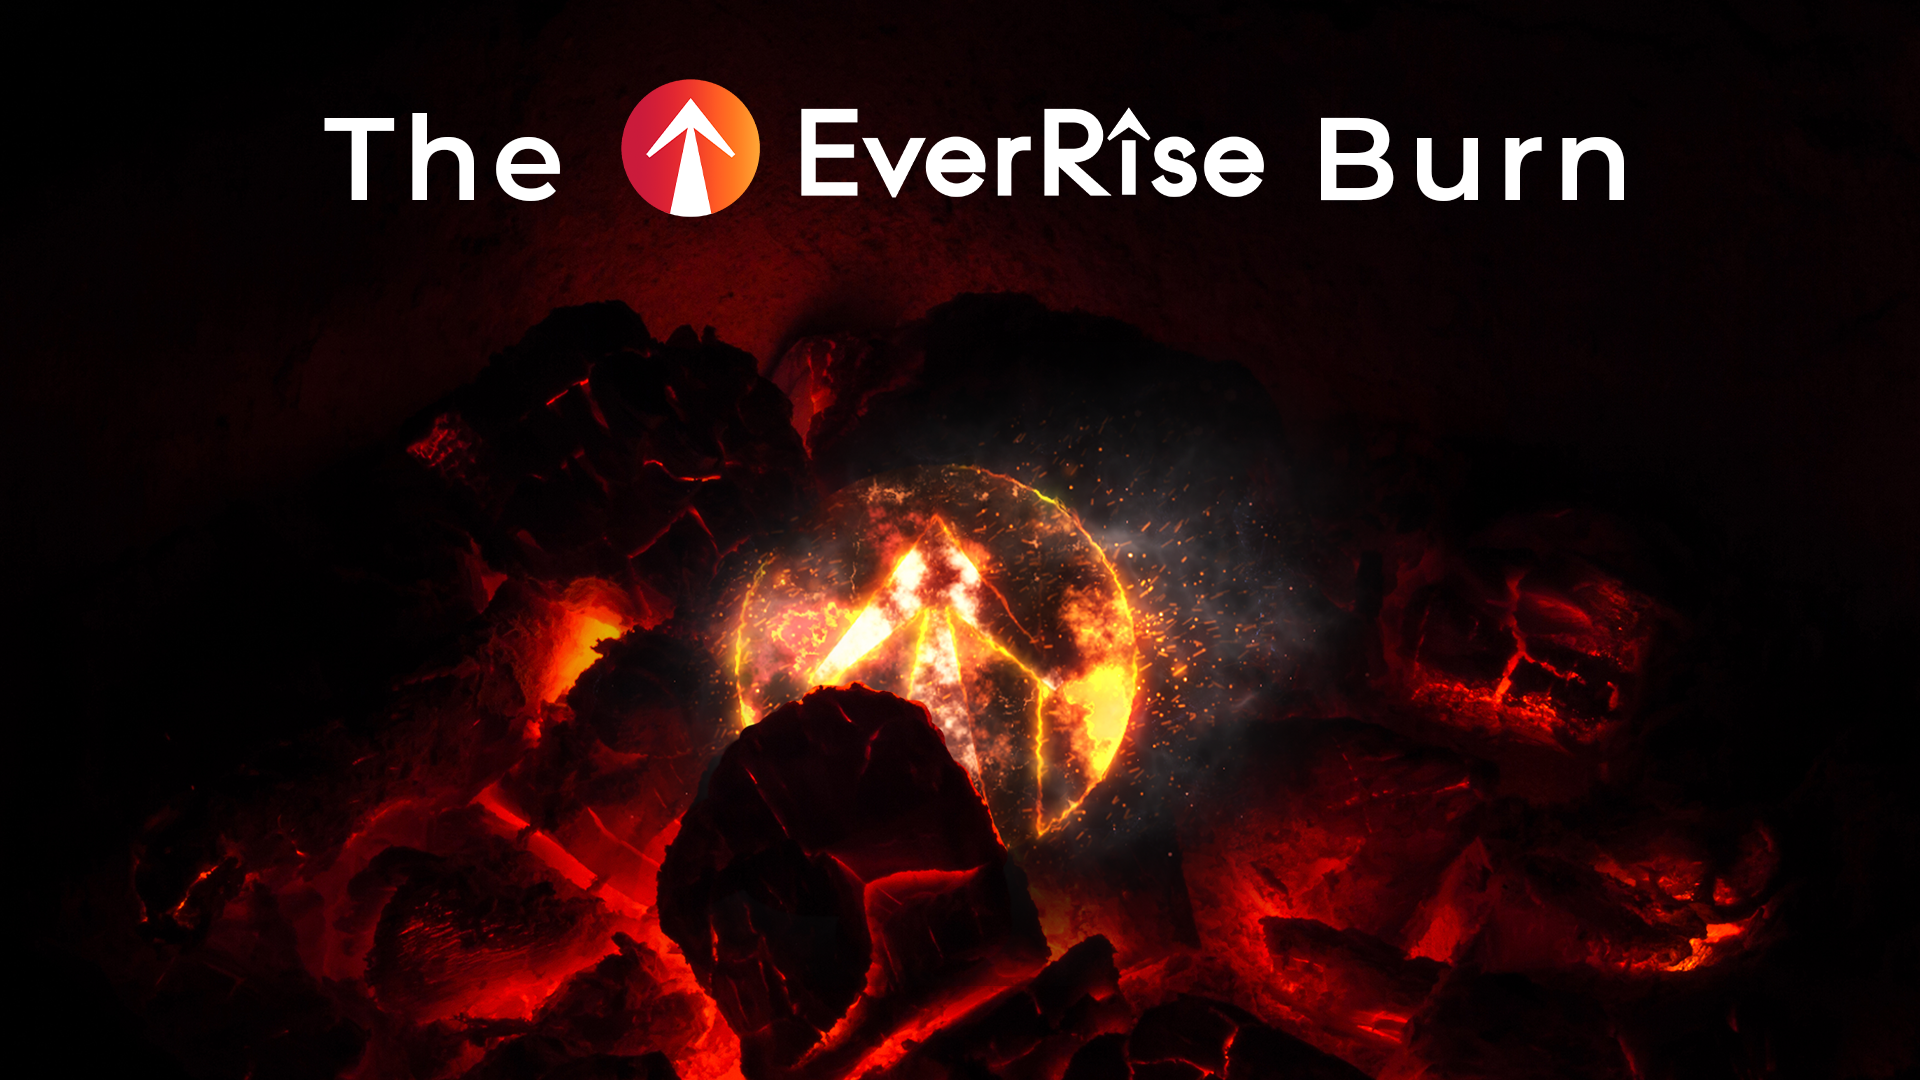 The EverRise Burn